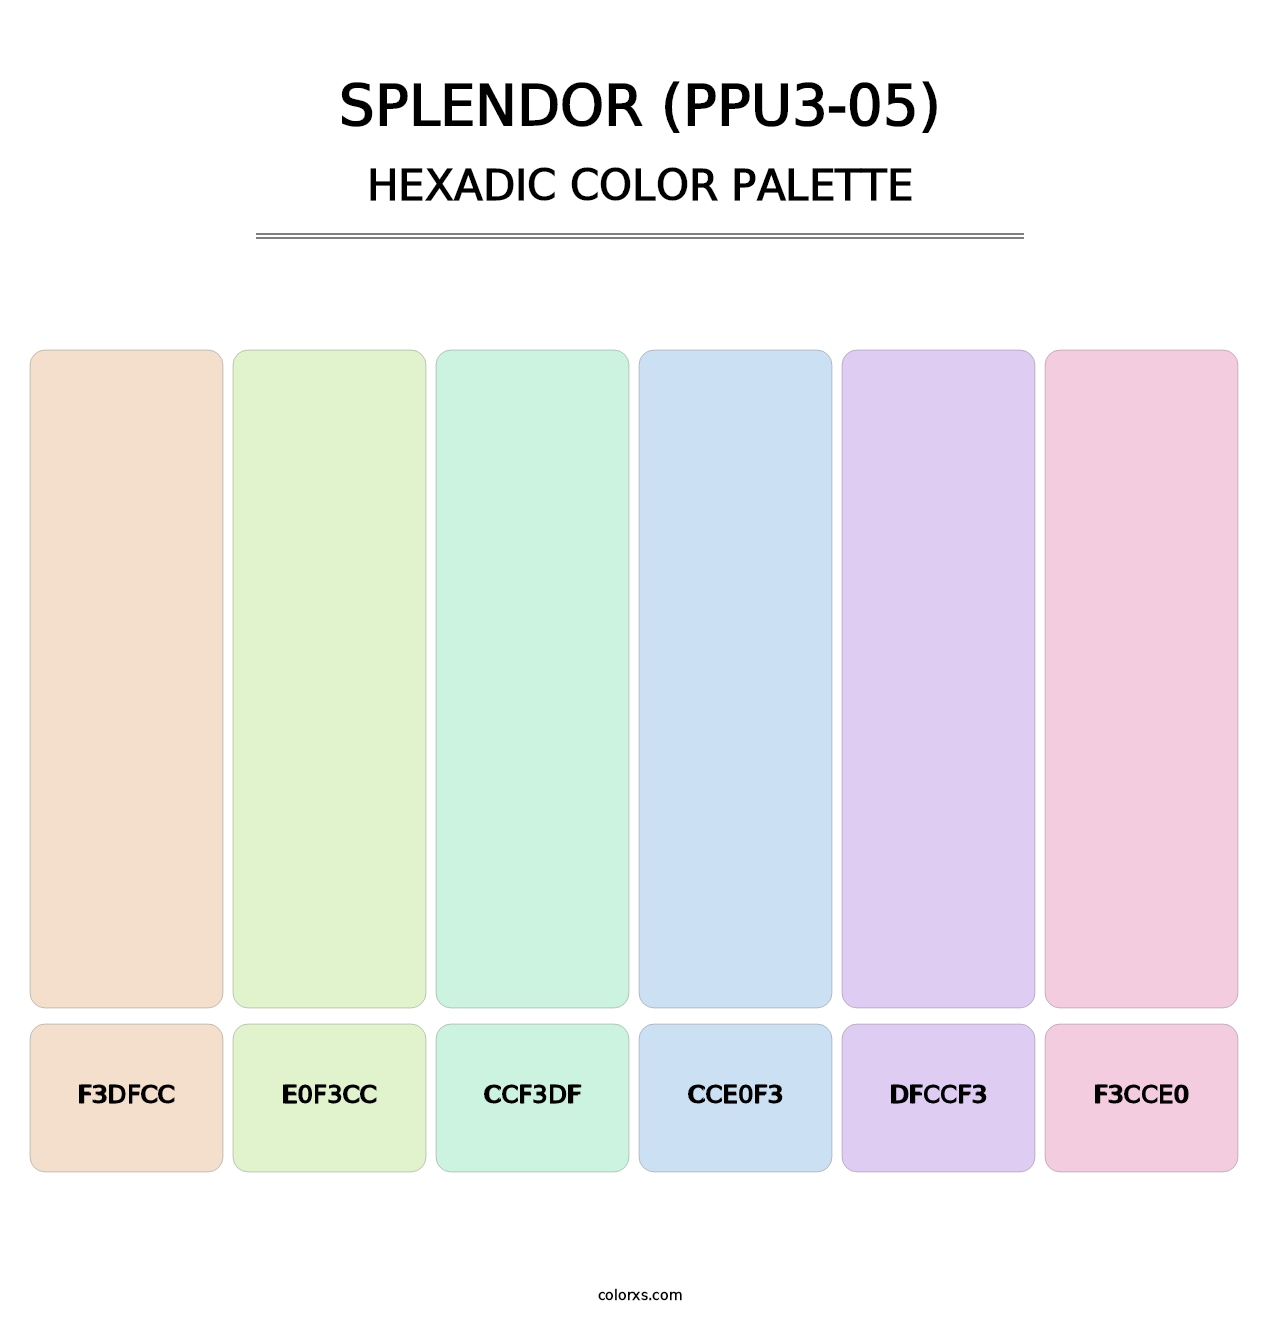 Splendor (PPU3-05) - Hexadic Color Palette